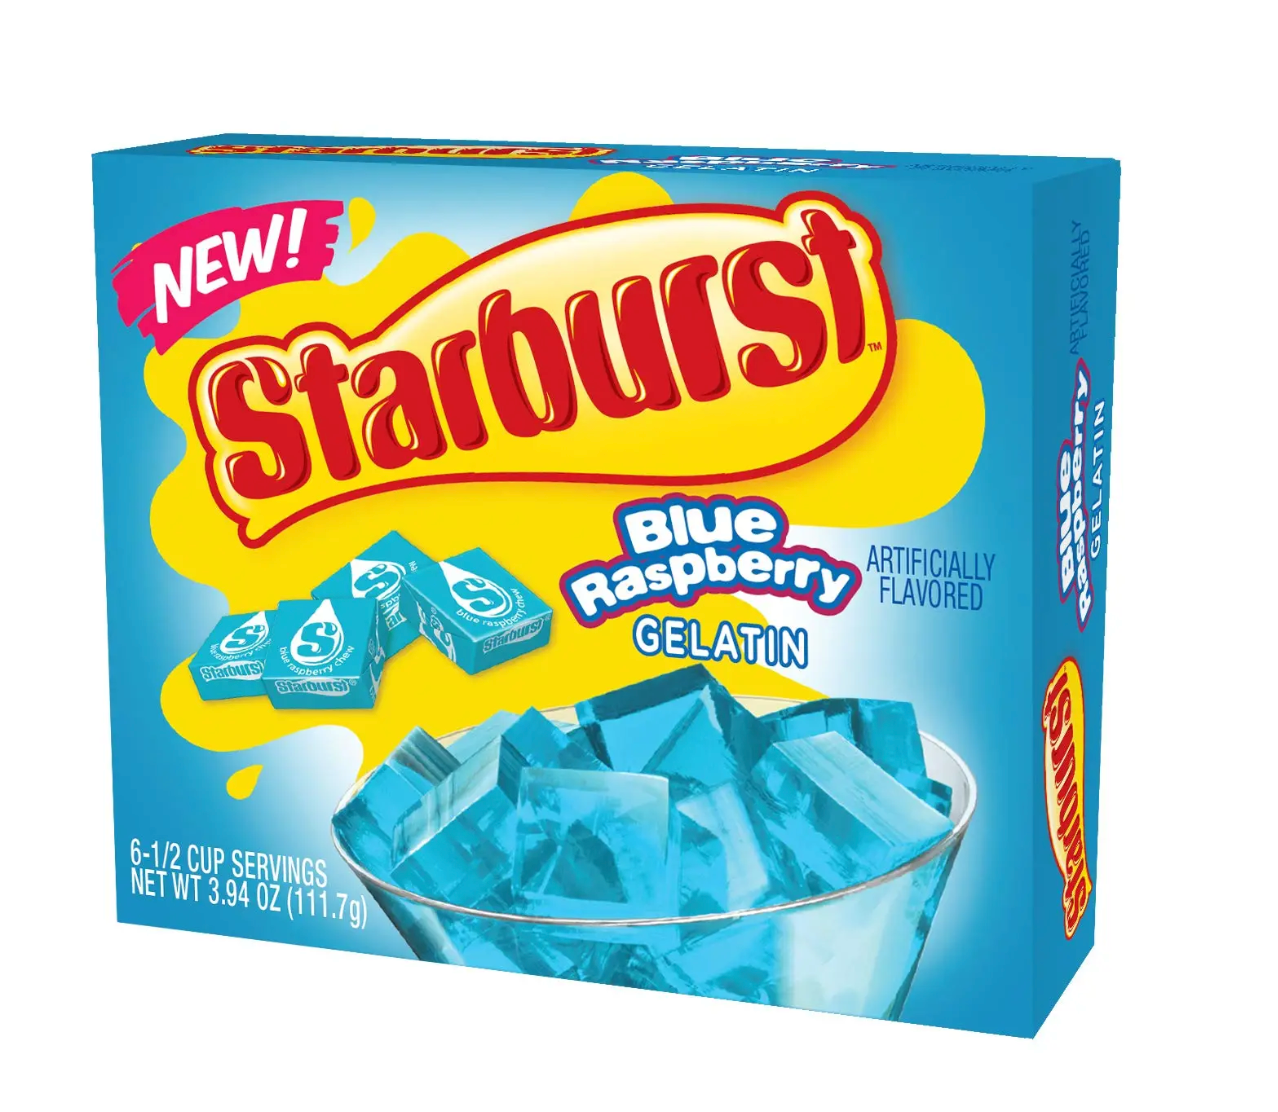 Starburst - Blue Raspberry Gelatin - 111g